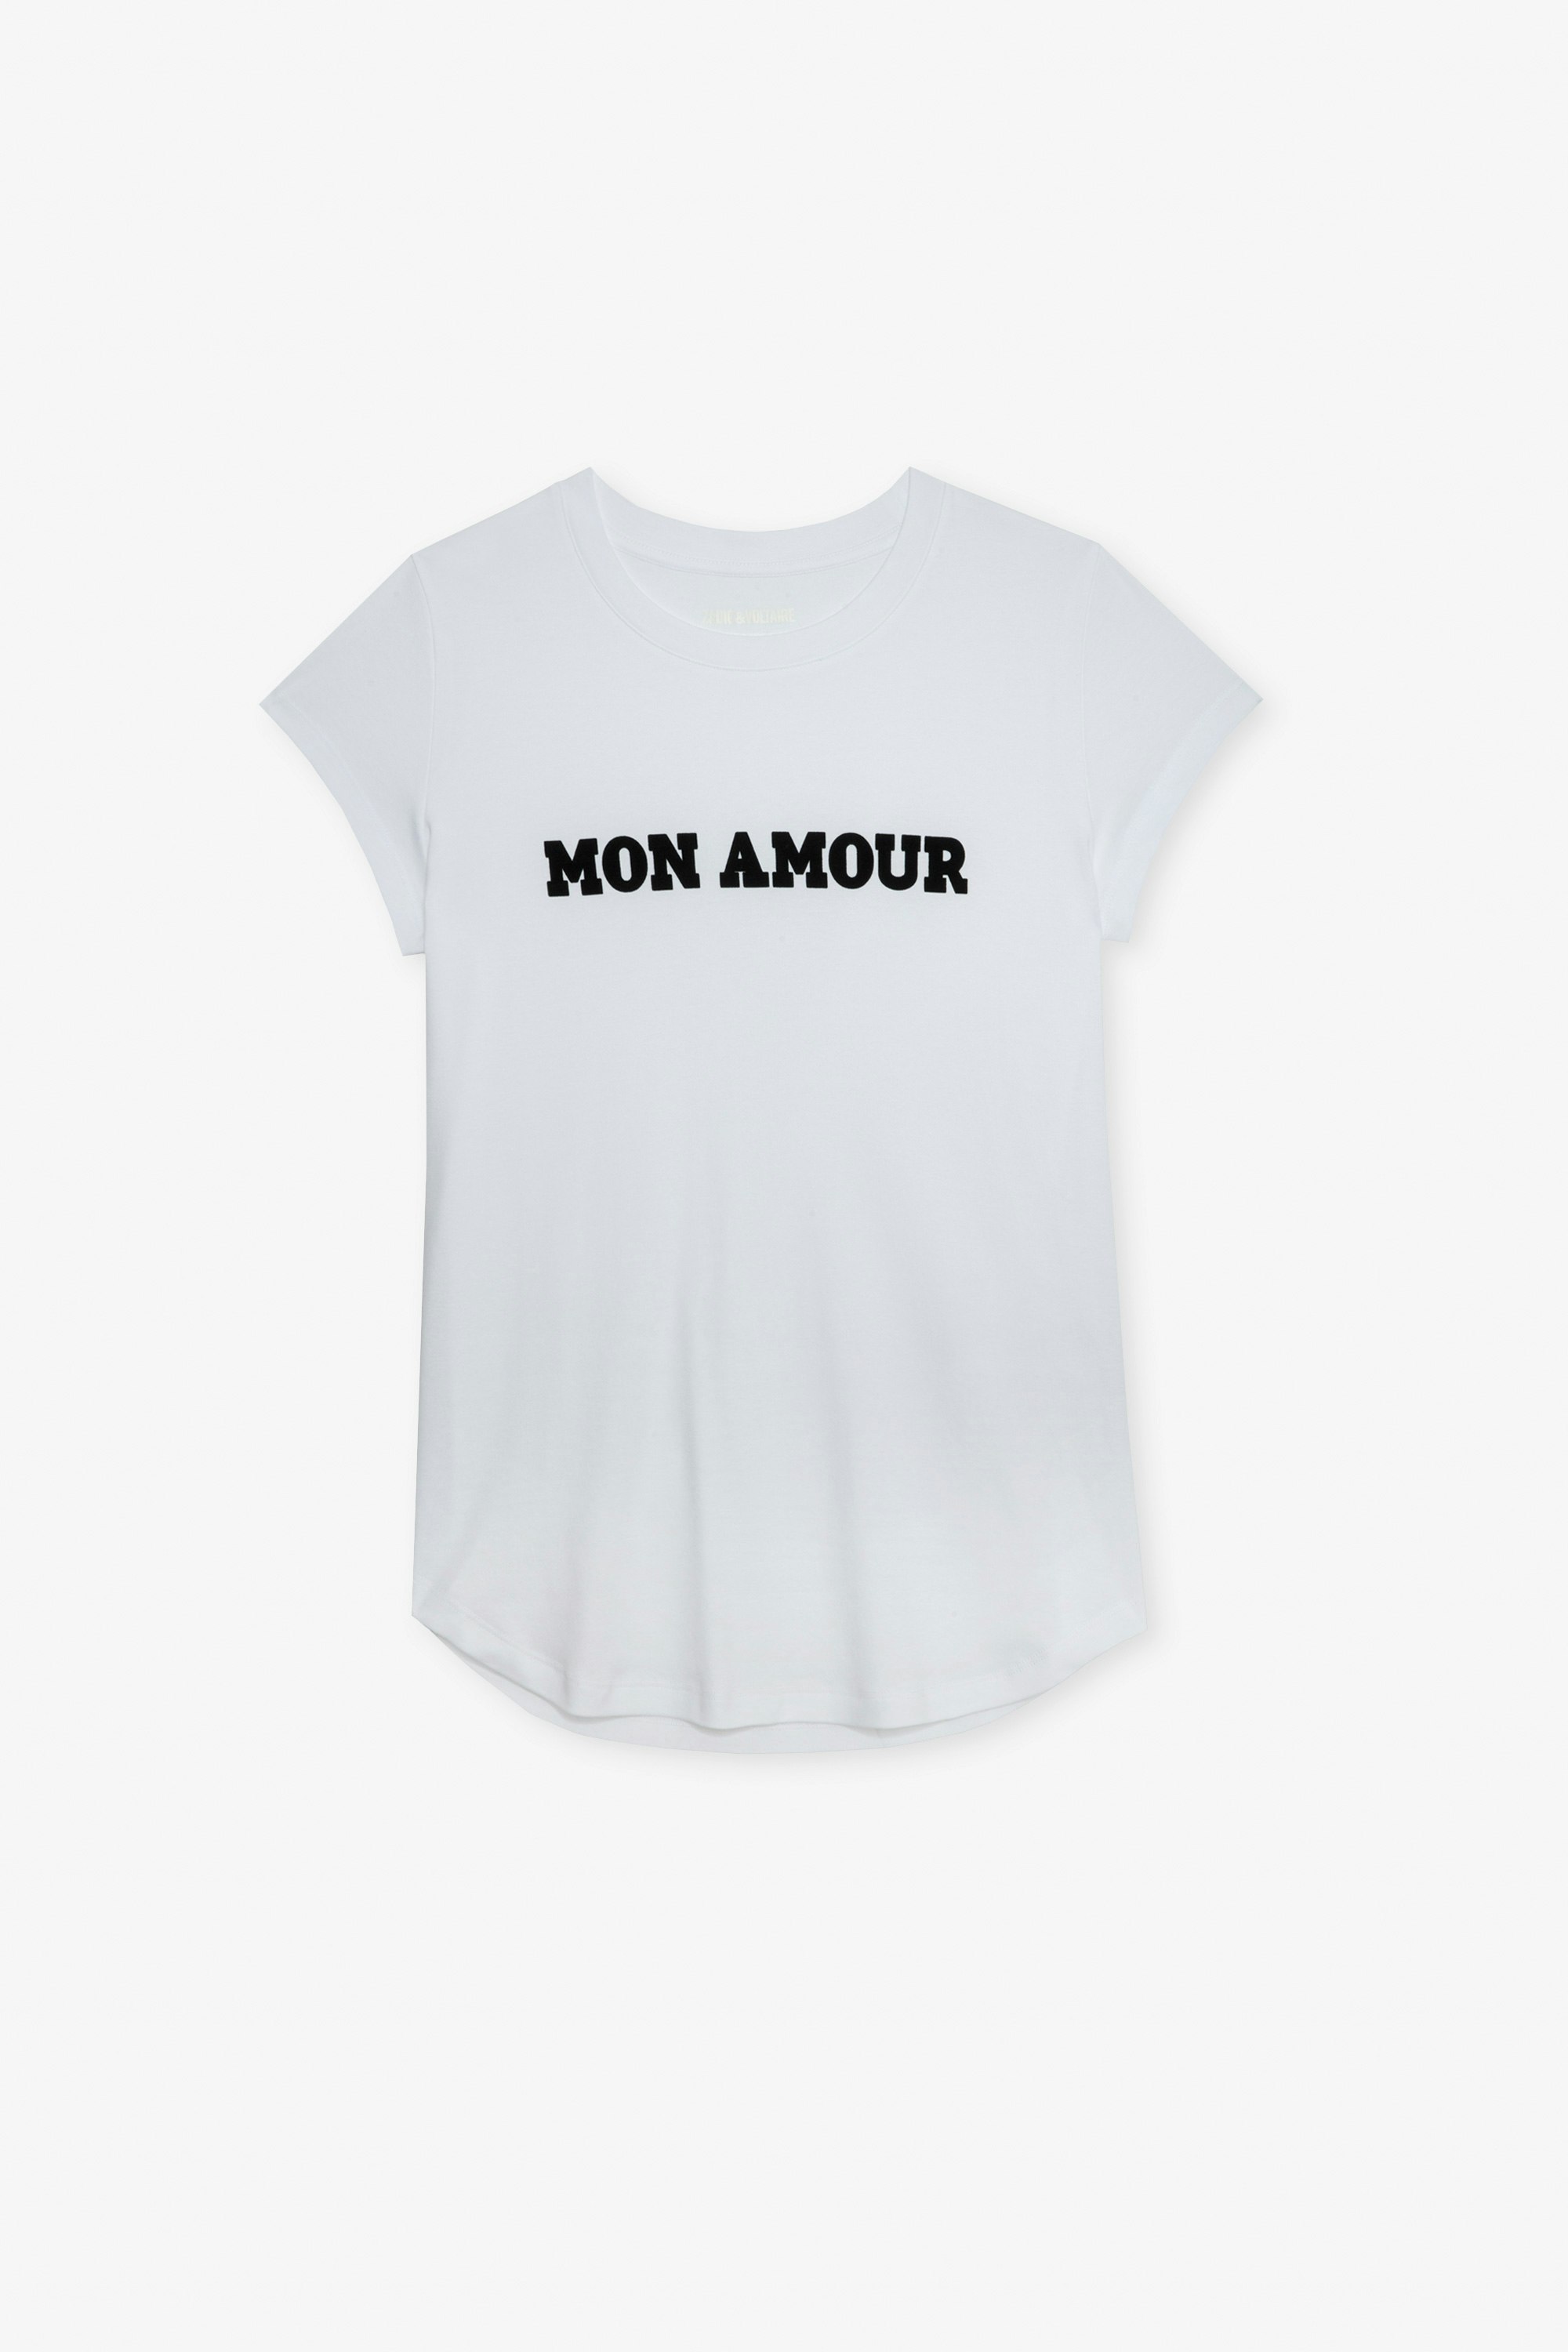 Woop Mon Amour Ｔシャツ レディース ホワイトコットンTシャツ 「Mon Amour」スローガン